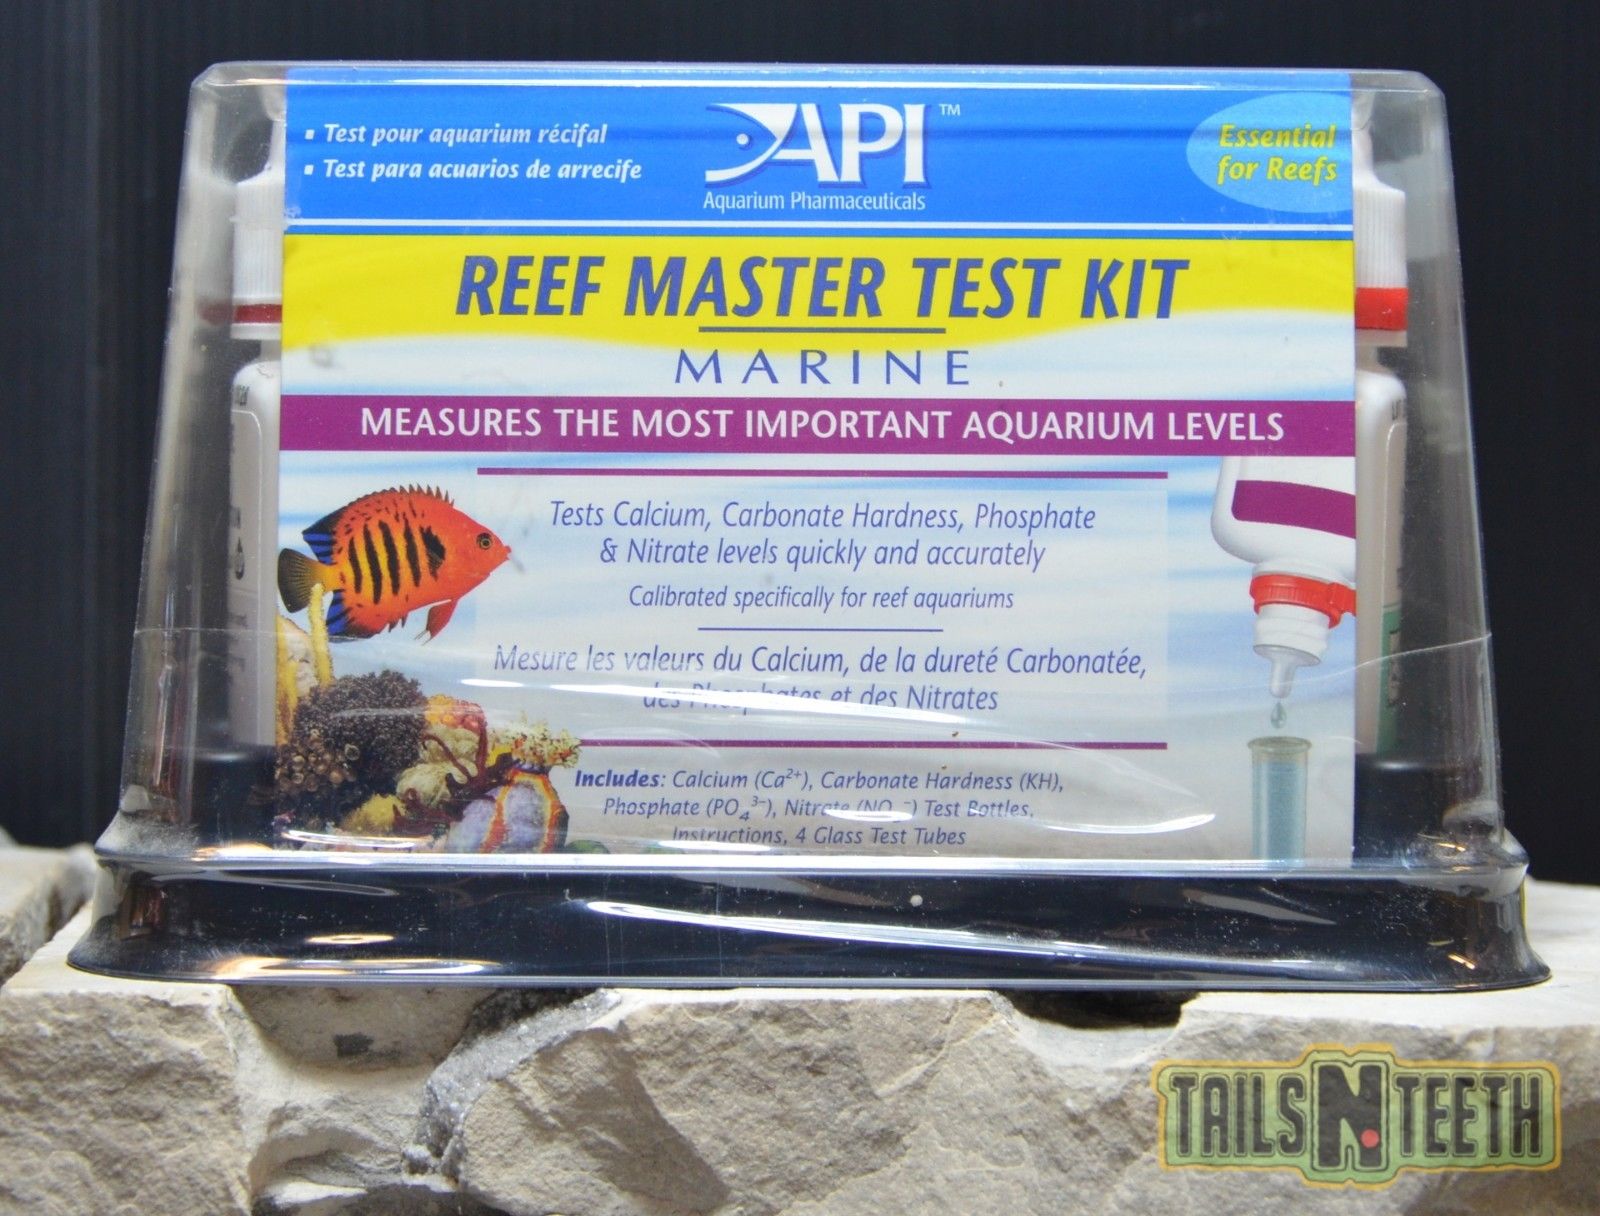 Marine Master Test Kit – Reef Aquarium — TailsNTeeth